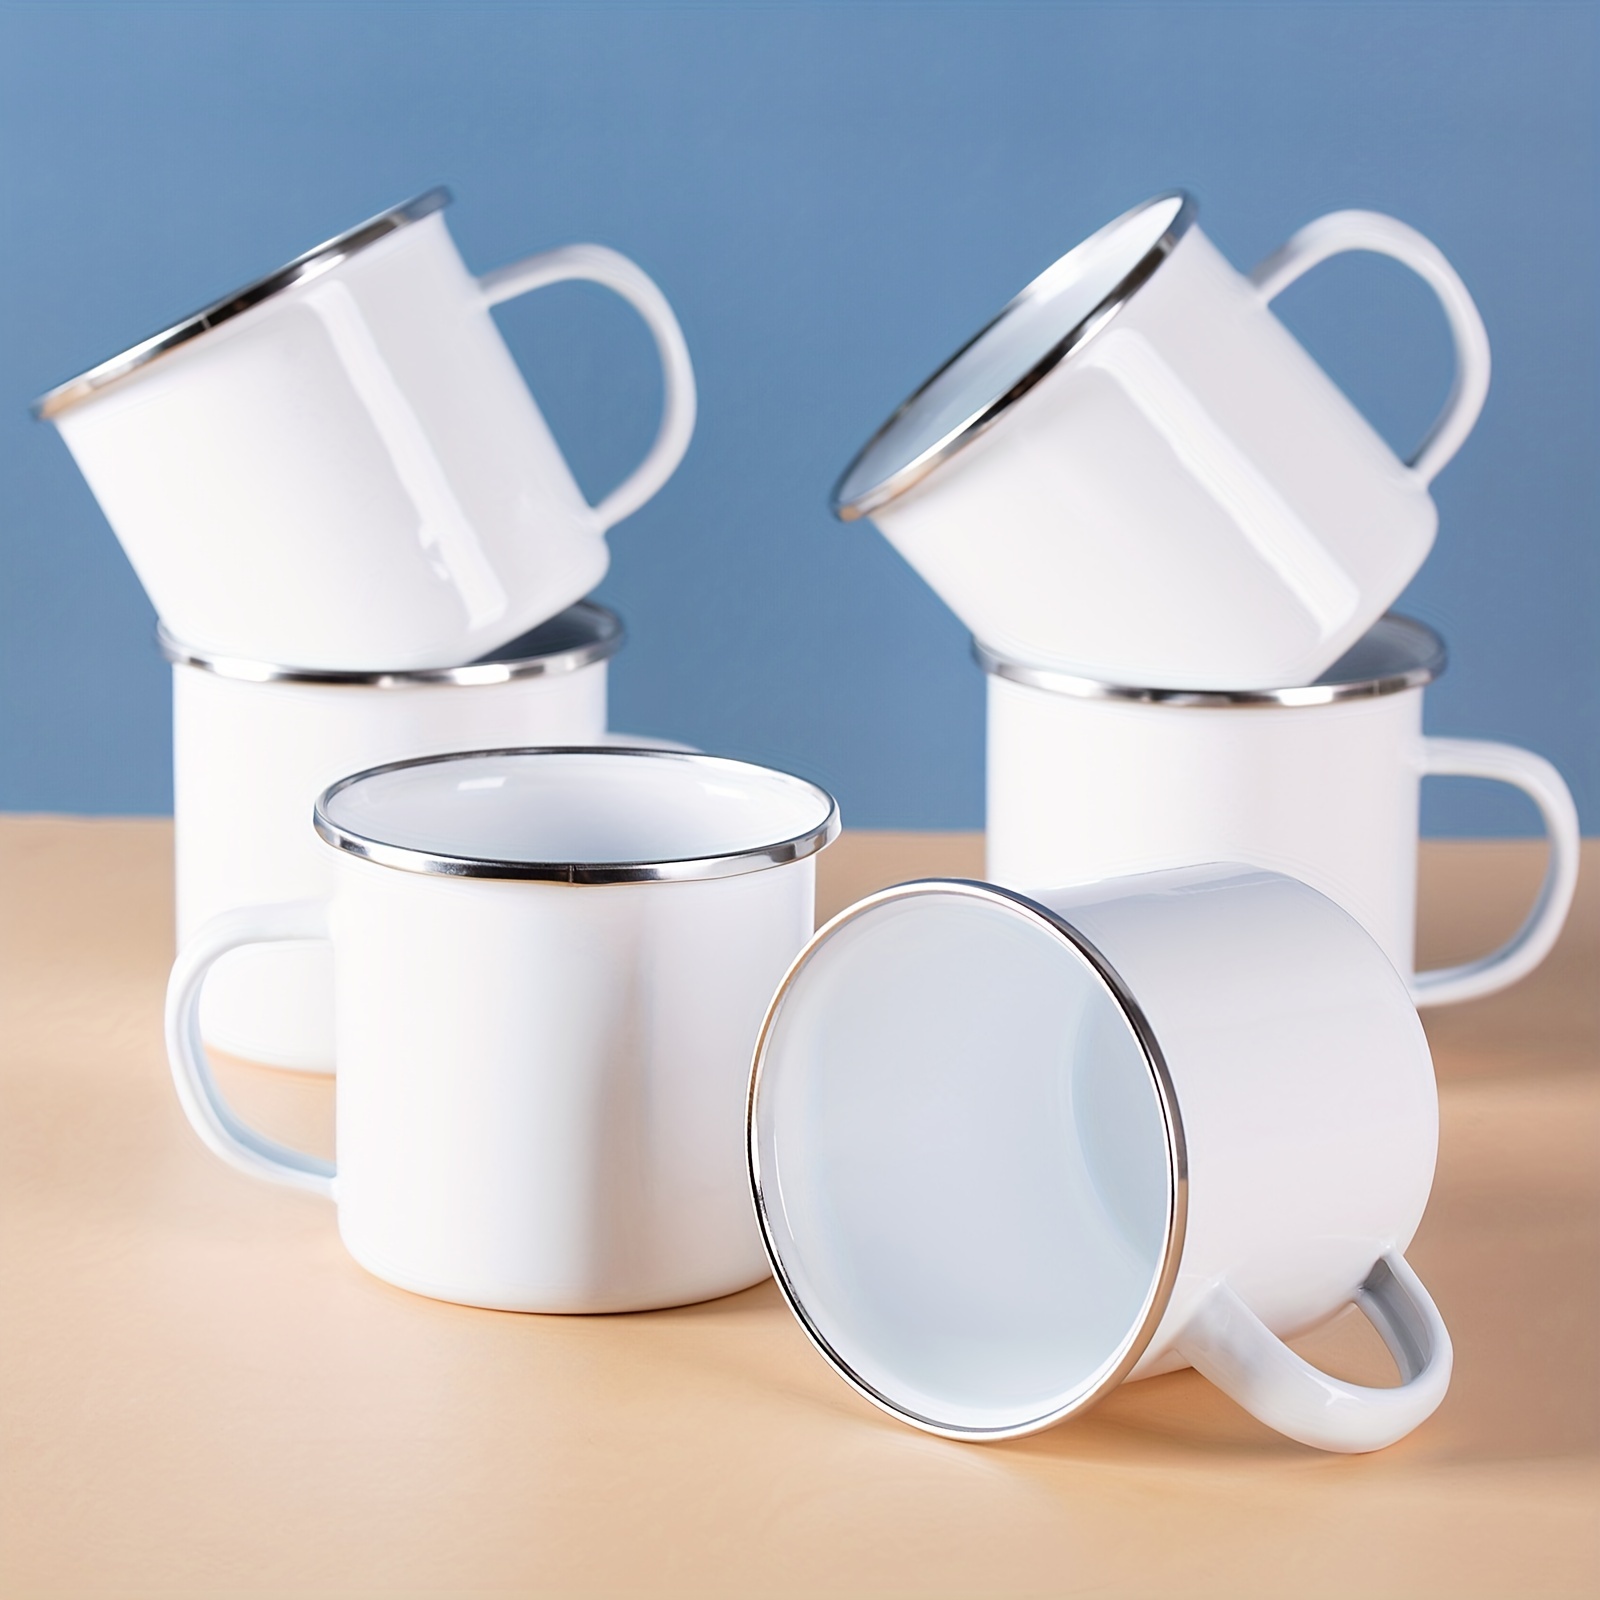 White Mugs for Tea & Coffee